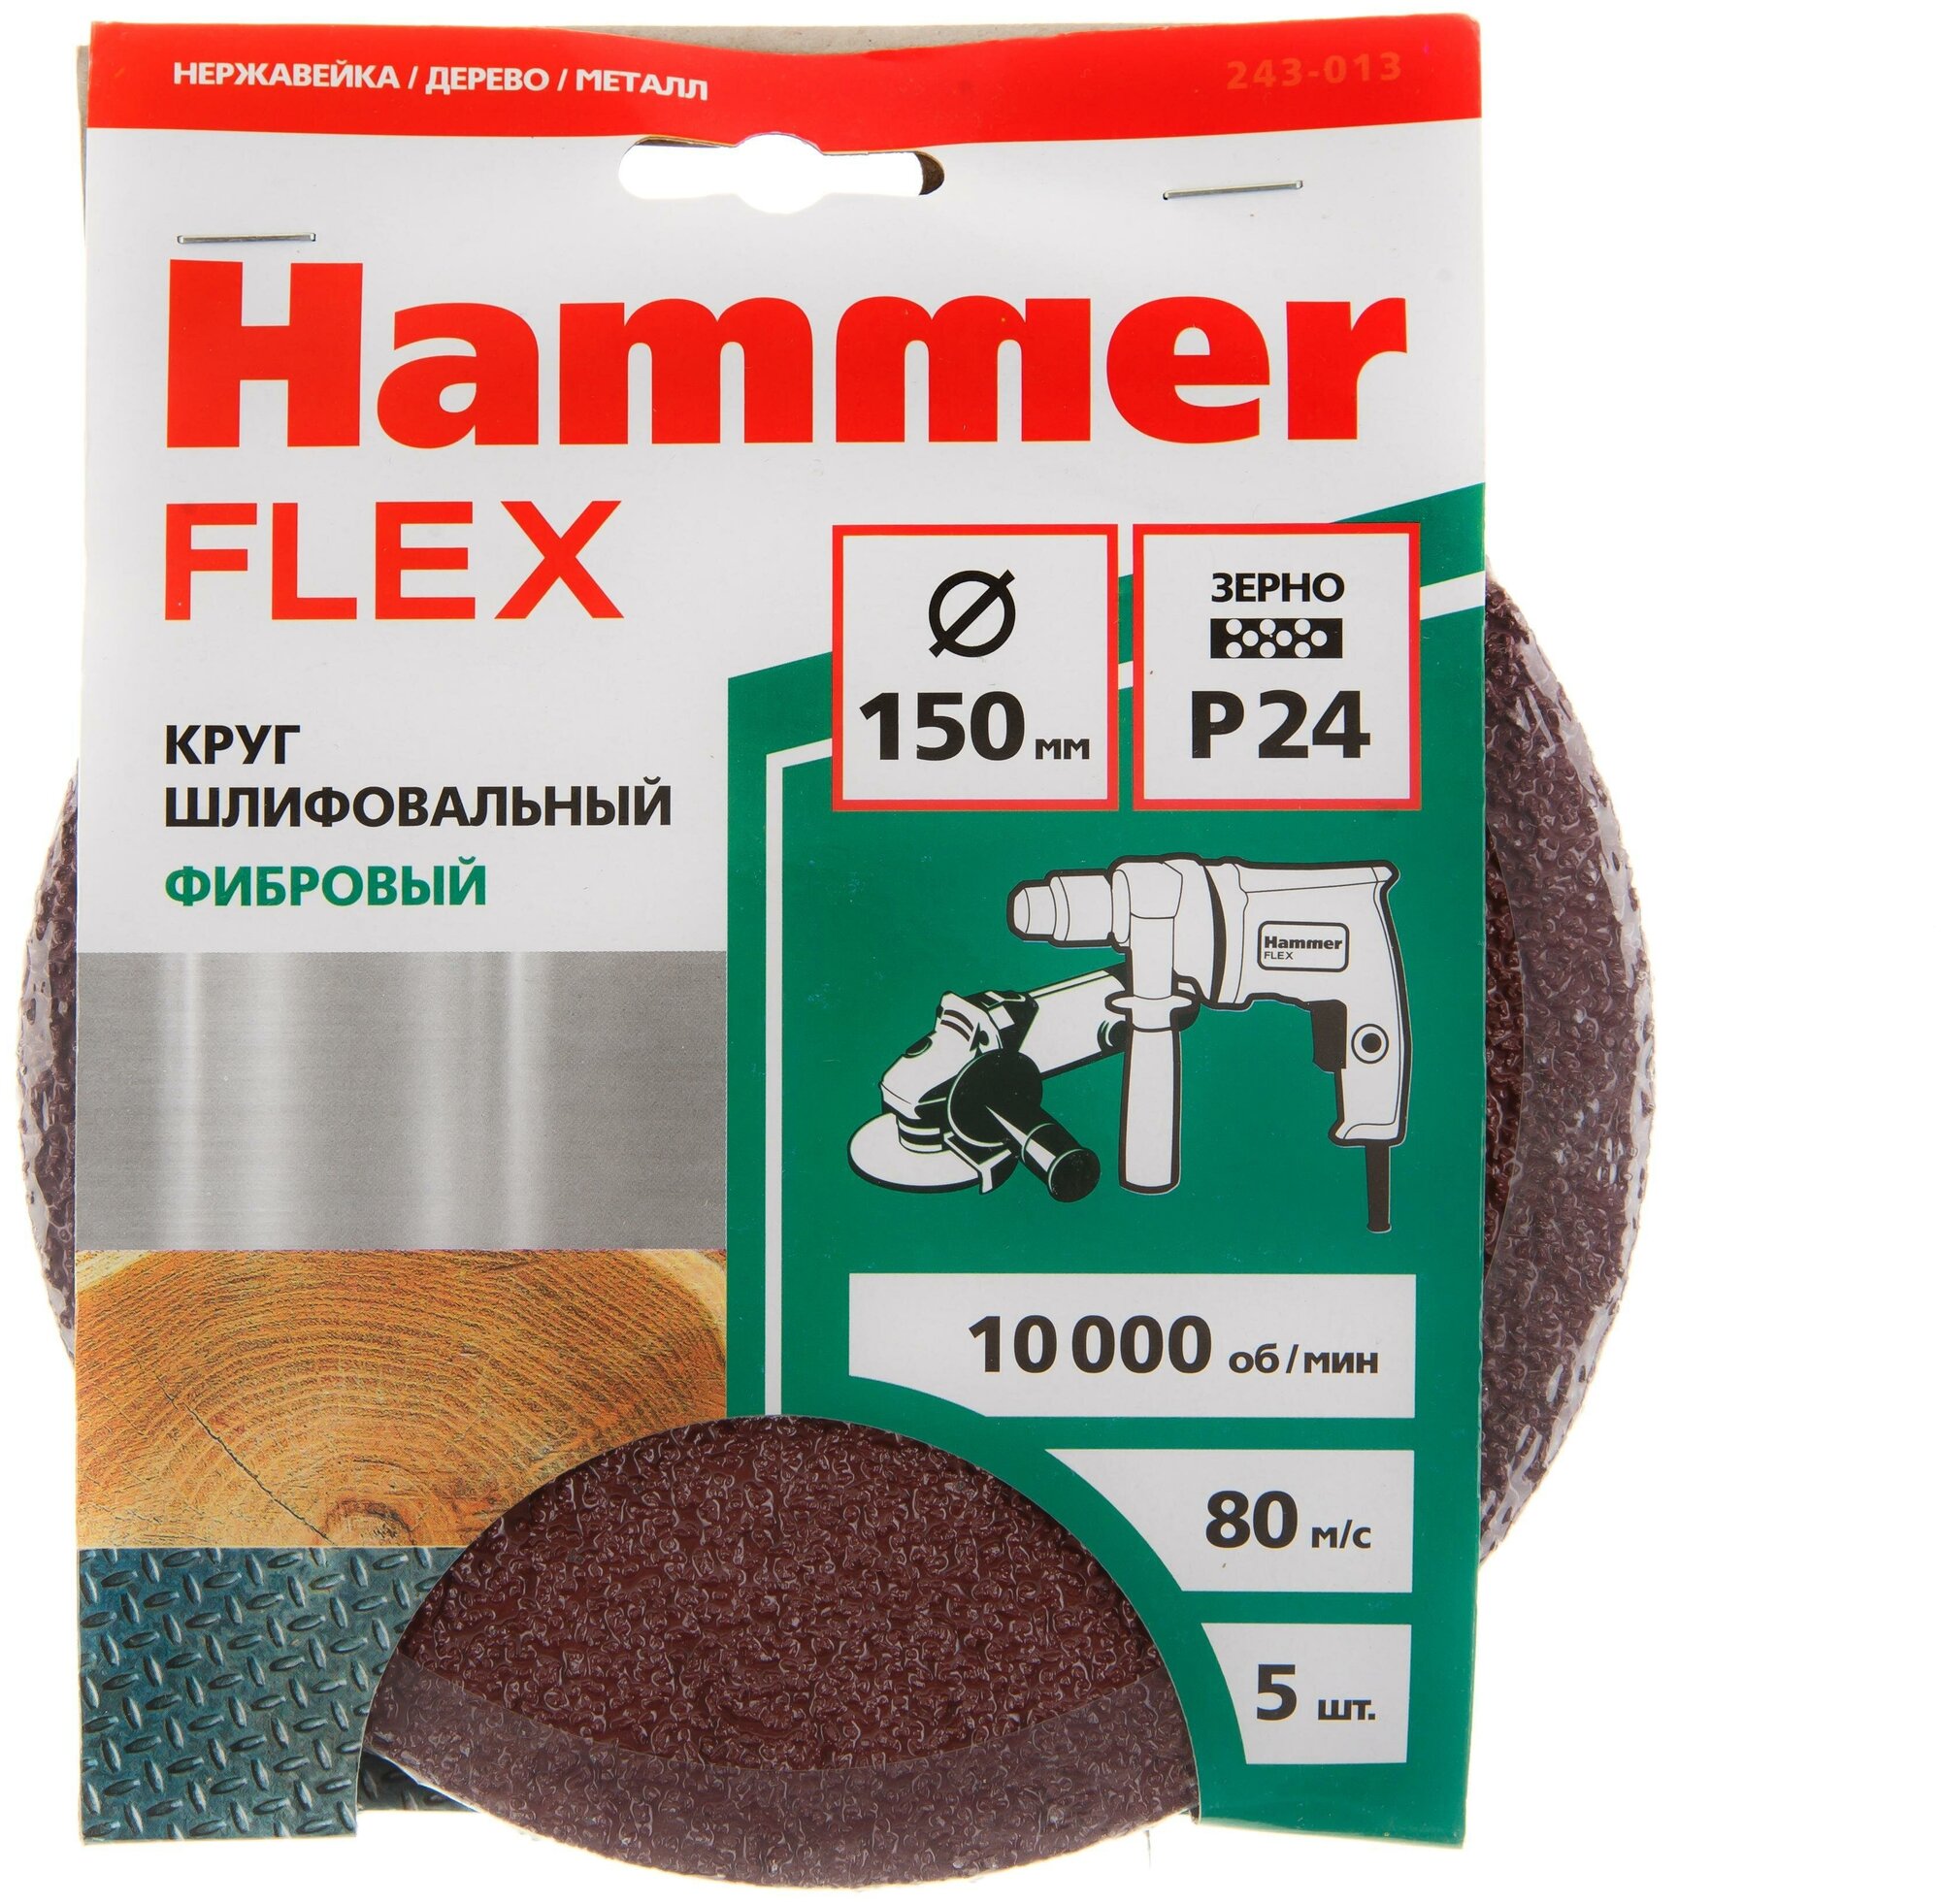 Круг шлифовальный фибровый Hammer Flex 243-013, 150мм, P24, 10000 об/мин, 80м/с (5шт)